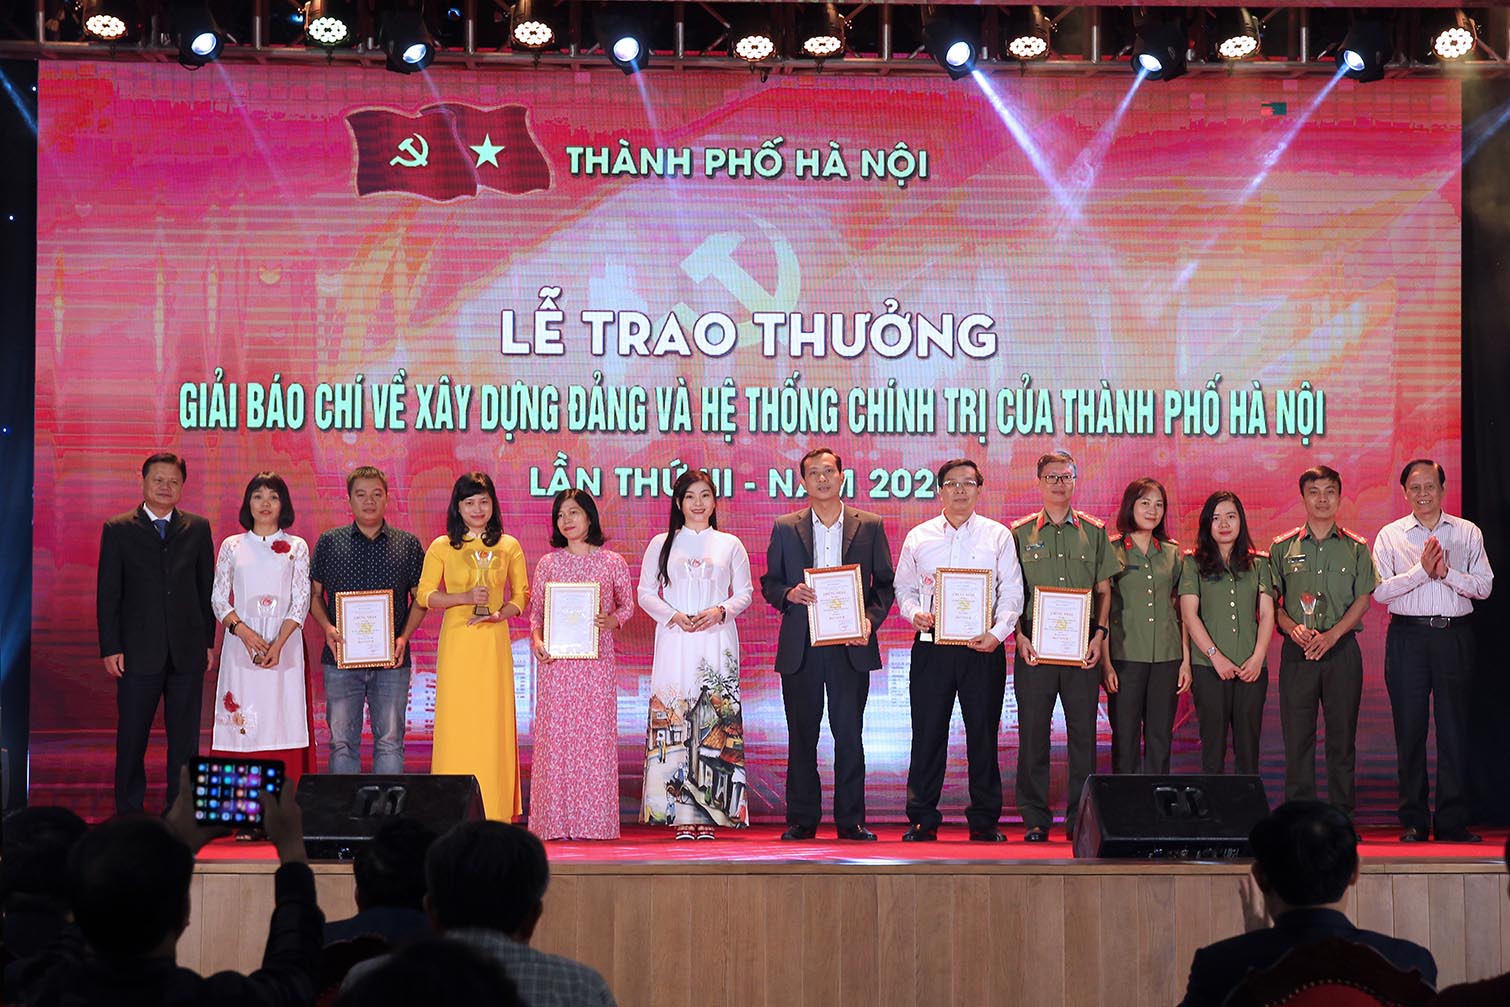 Các tác giả đoạt giải B Giải Báo chí về xây dựng Đảng và hệ thống chính trị của Thành phố Hà Nội